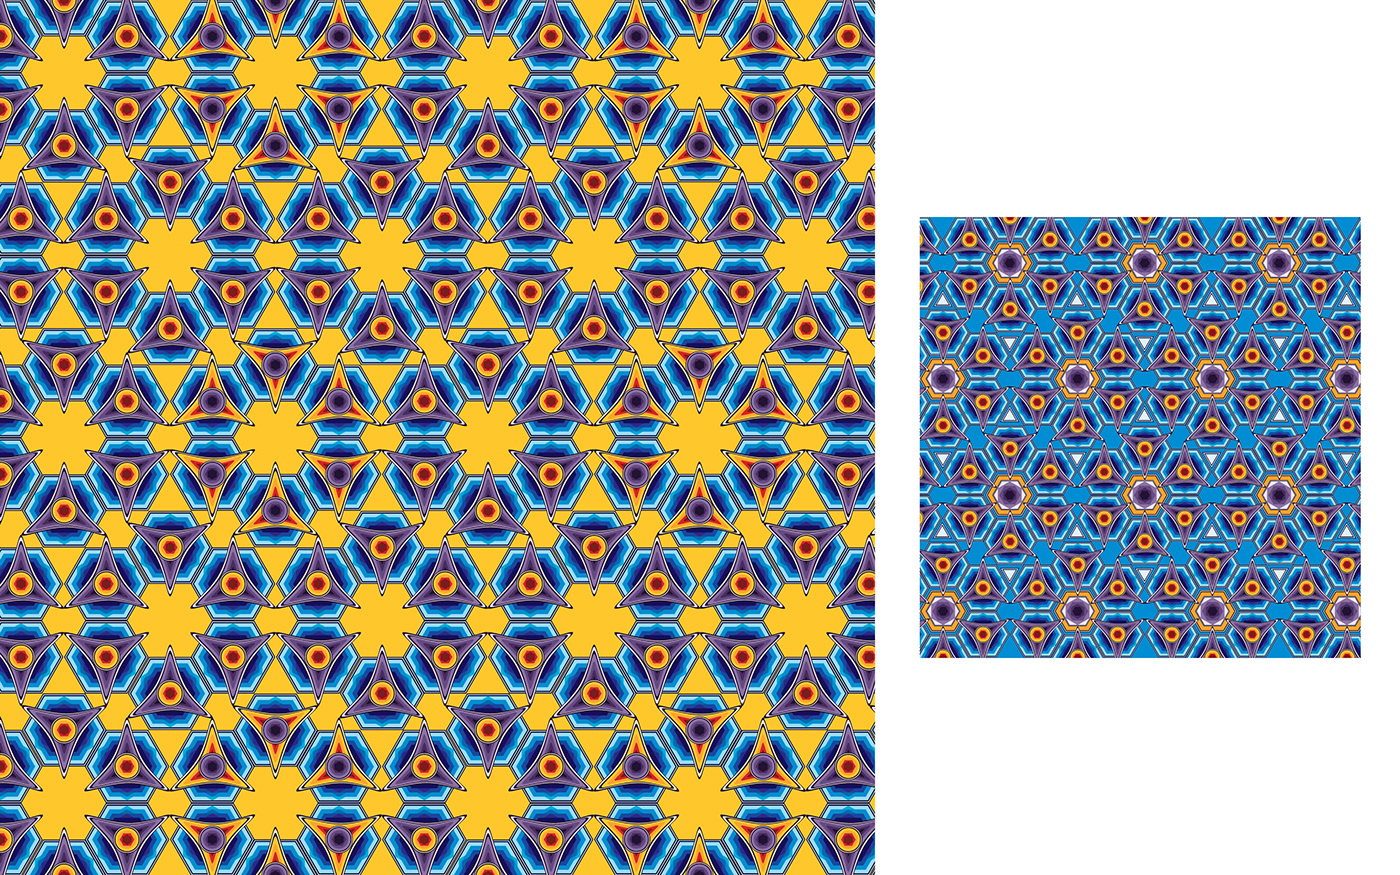 Flowers pattern textilepattern flowerpattern printpattern repeatpattern